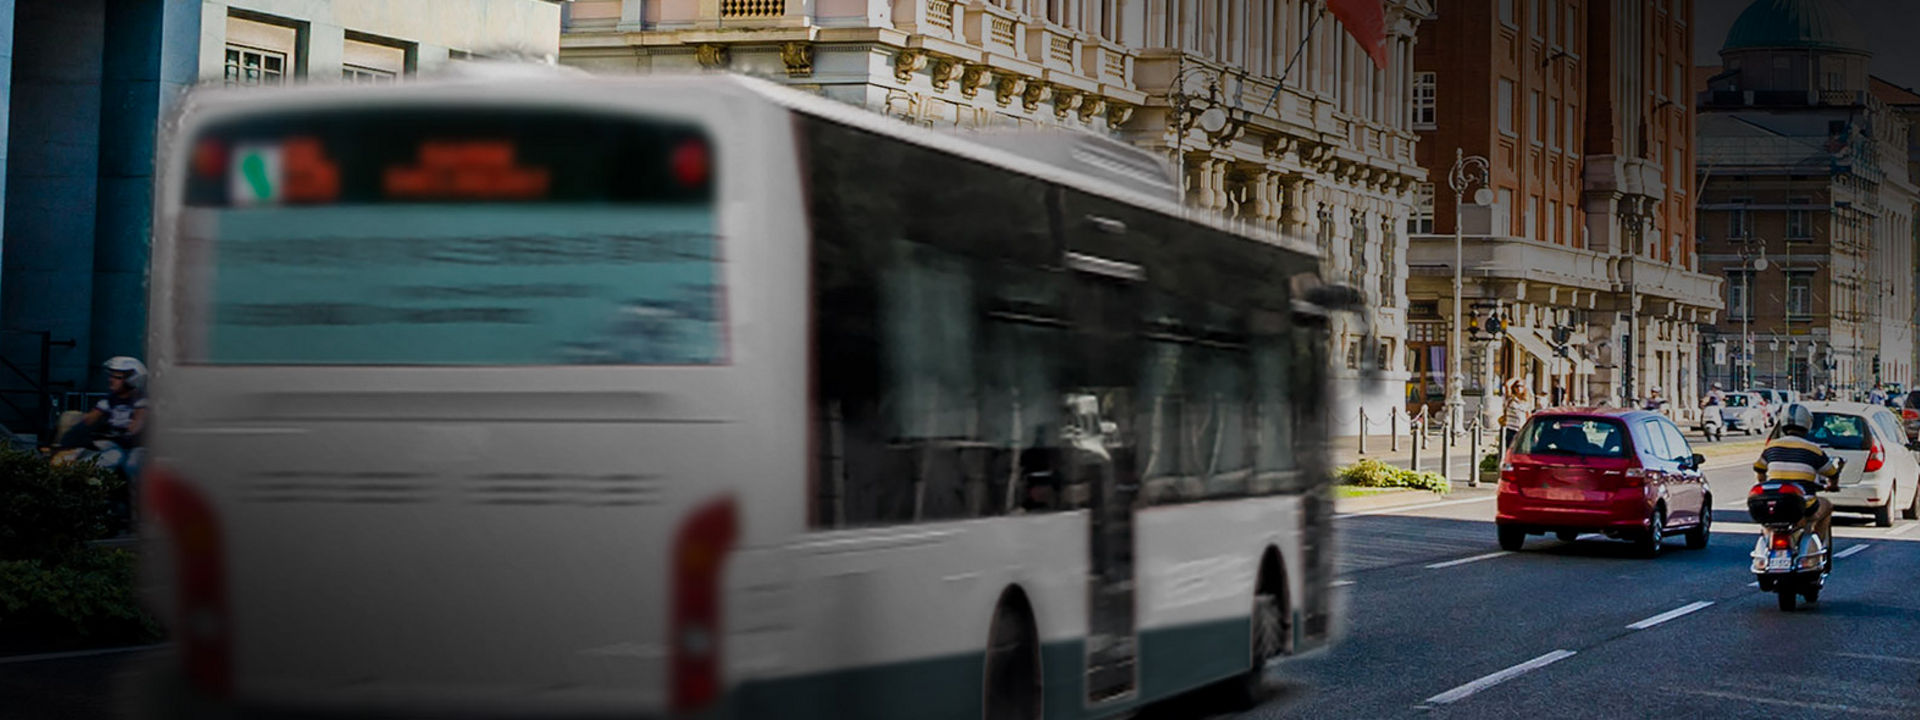 Deze afbeelding toont de achterkant van een door het stadscentrum rijdende stadsbus met stadsbusbanden van Bridgestone.